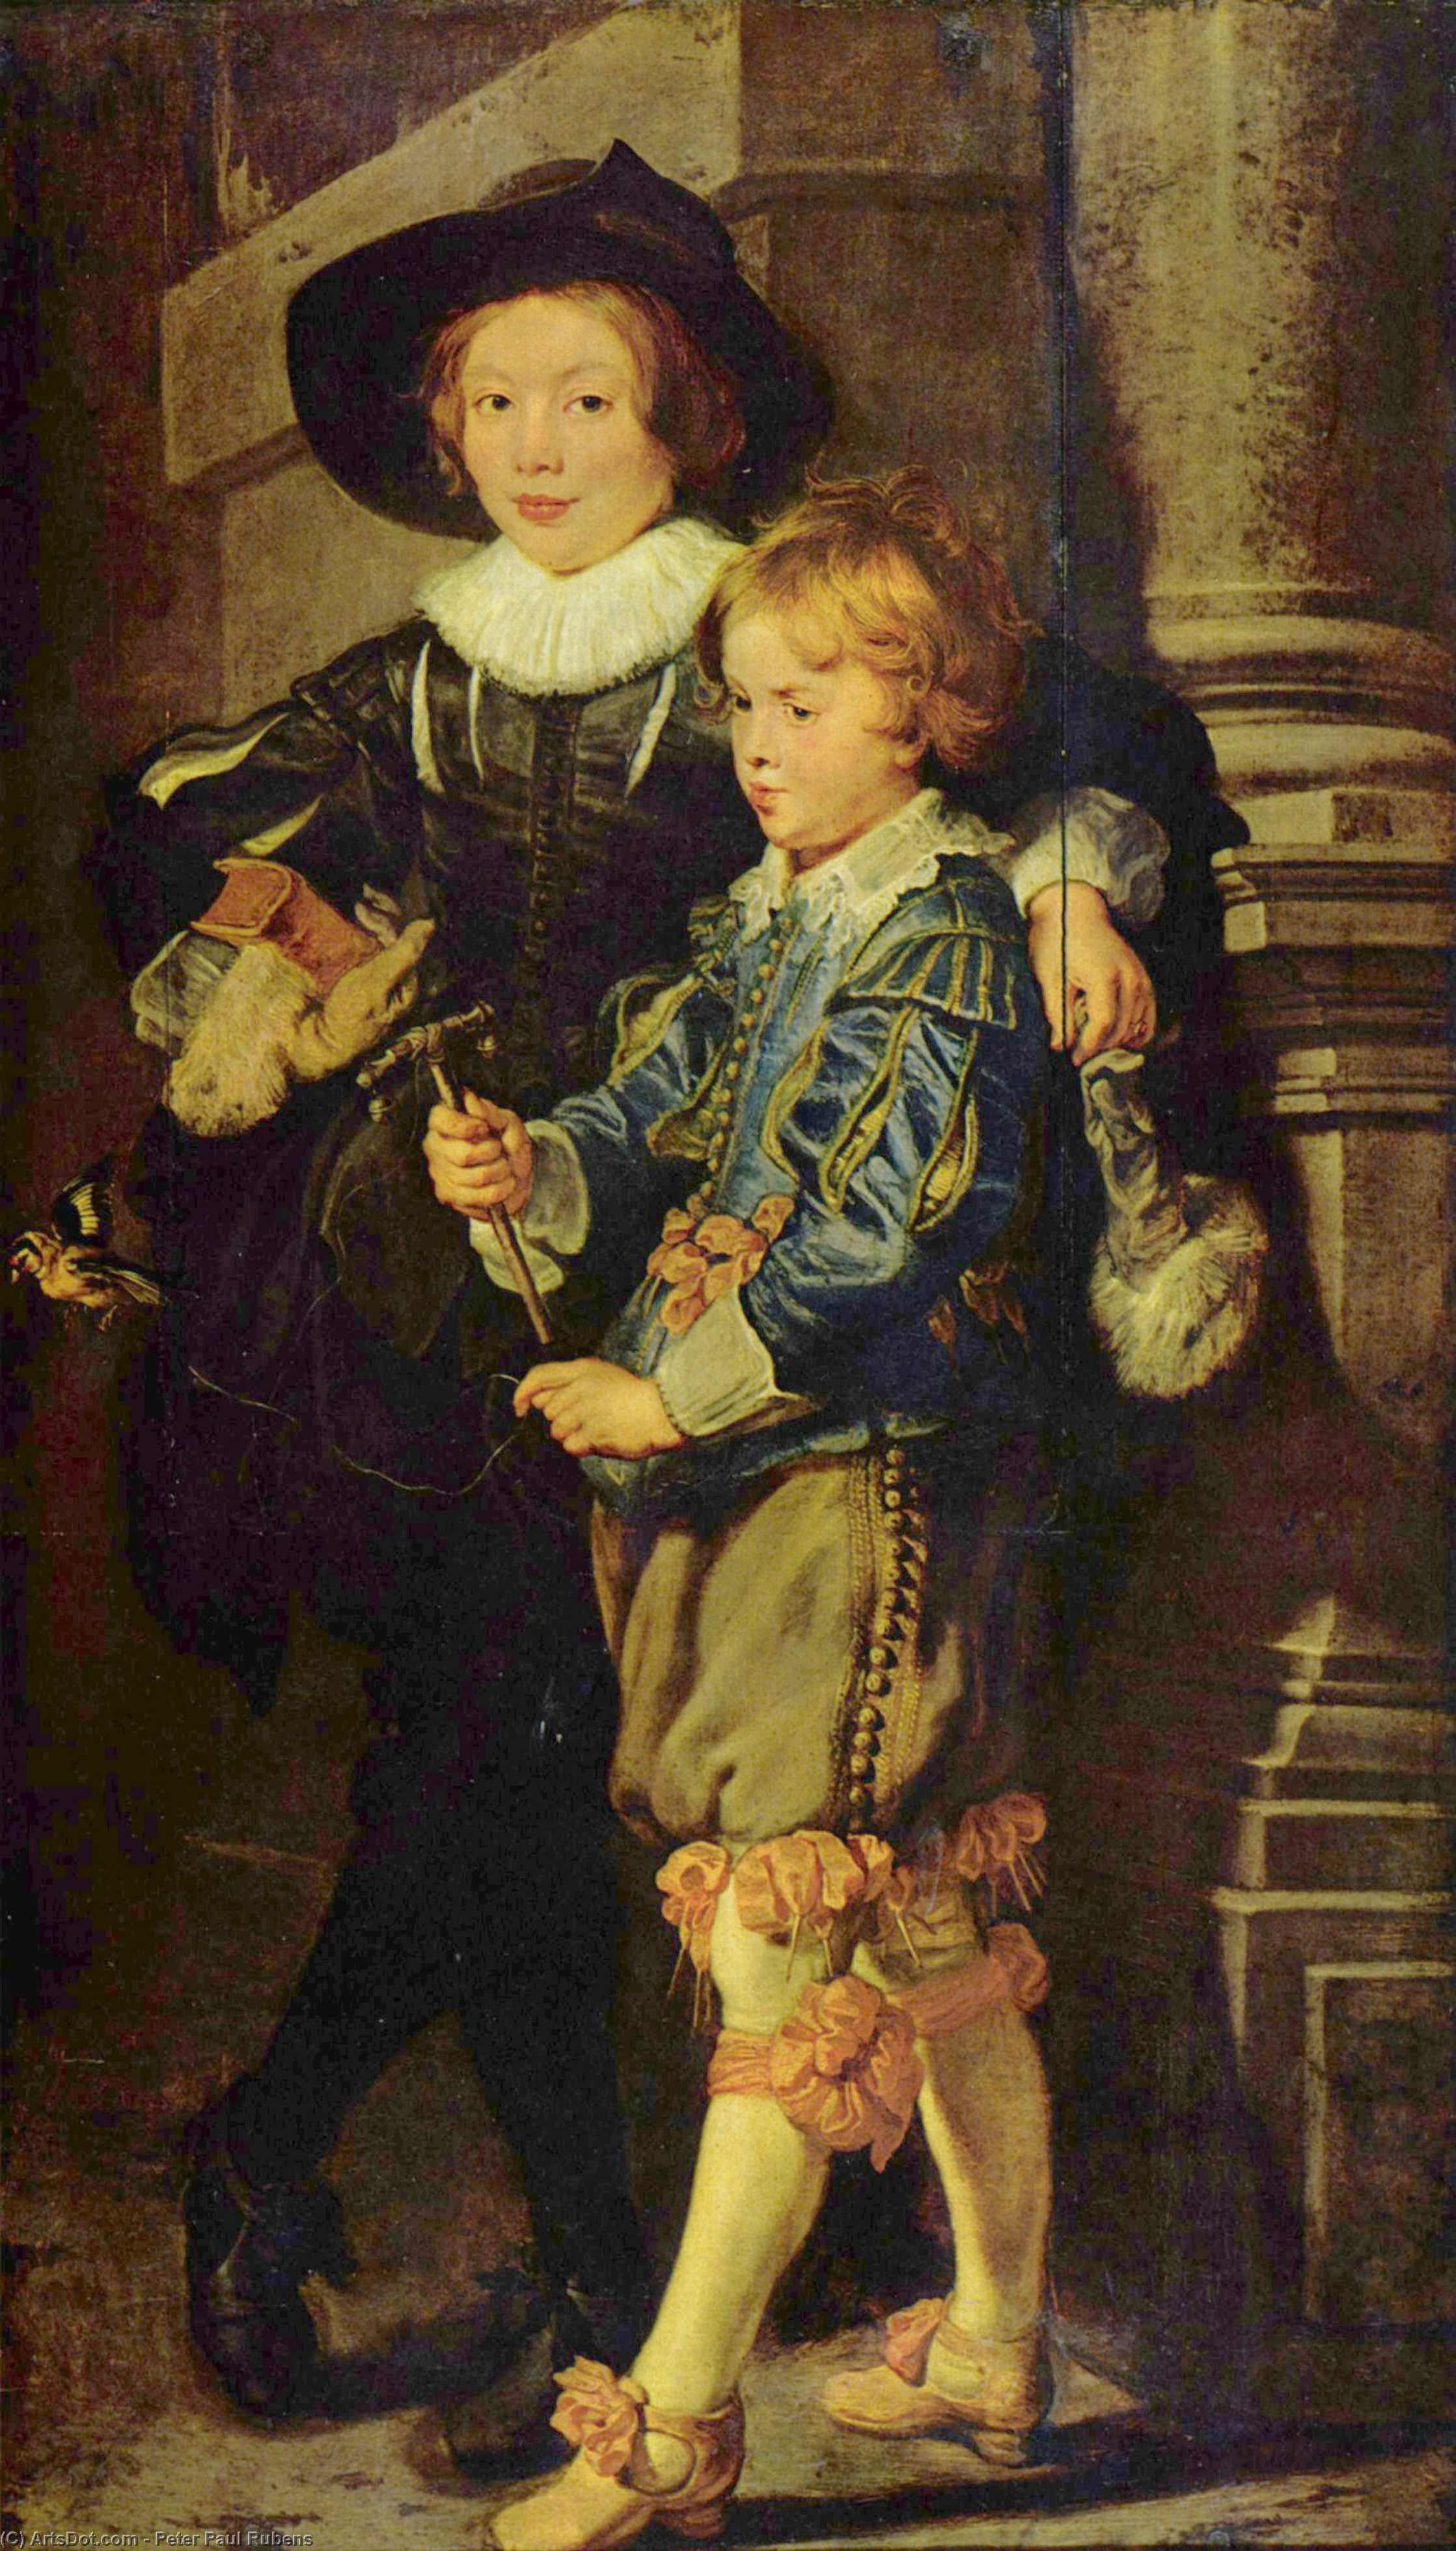 WikiOO.org - Encyclopedia of Fine Arts - Malba, Artwork Peter Paul Rubens - Portr t von Albert und Nicolas, S hne des K nstlers